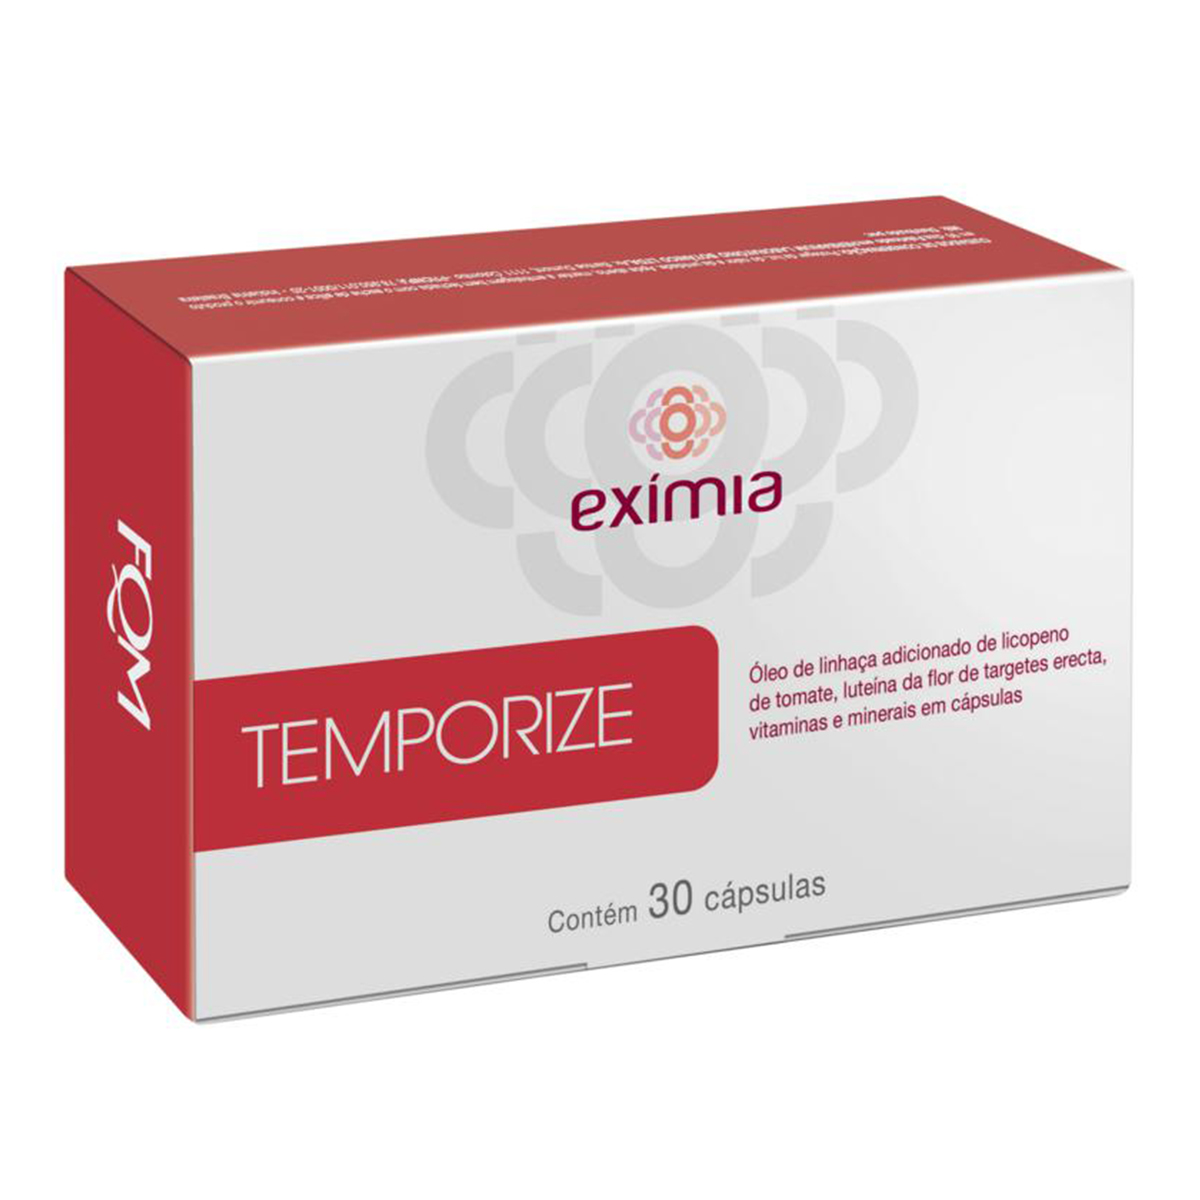 Suplemento Vitamínico Eximia Temporize com 30 cápsulas